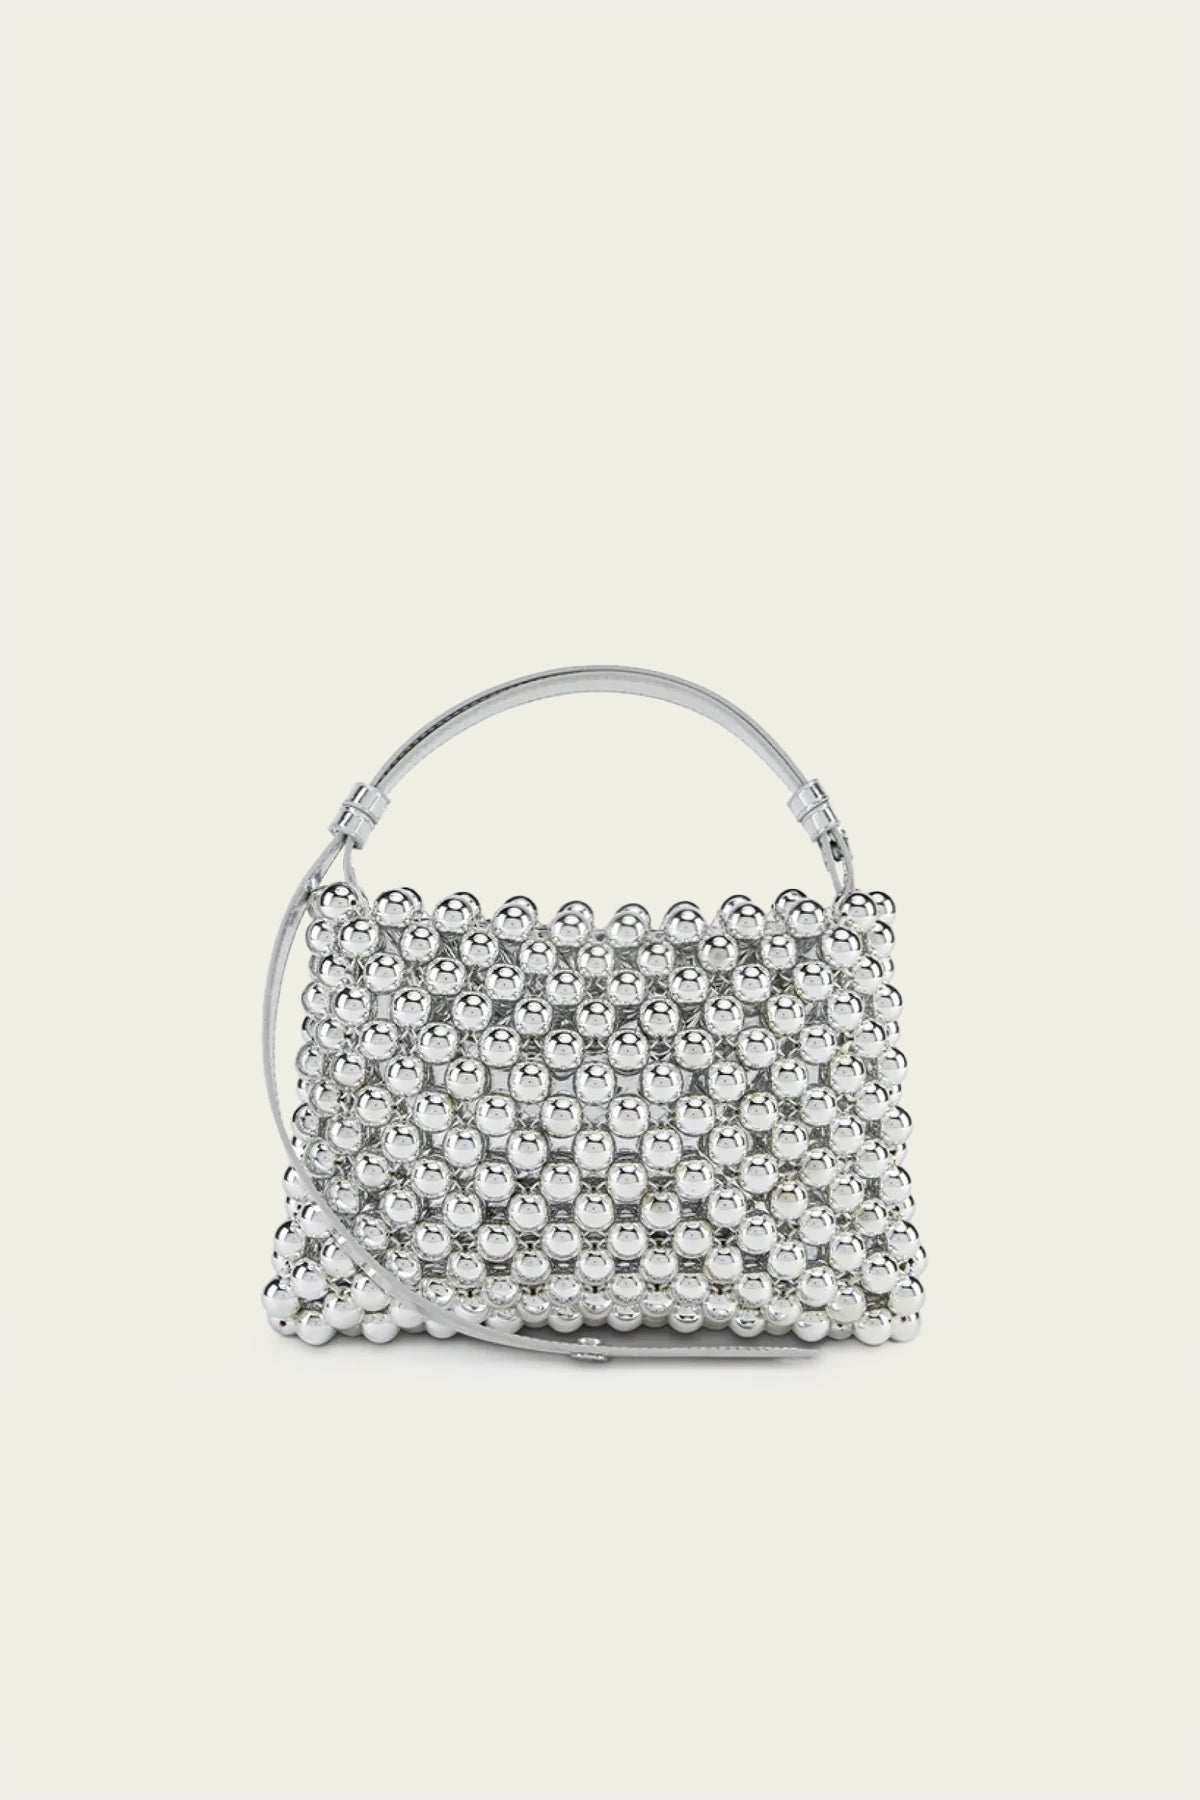 Mini Puffin Bag in Silver - shop-olivia.com